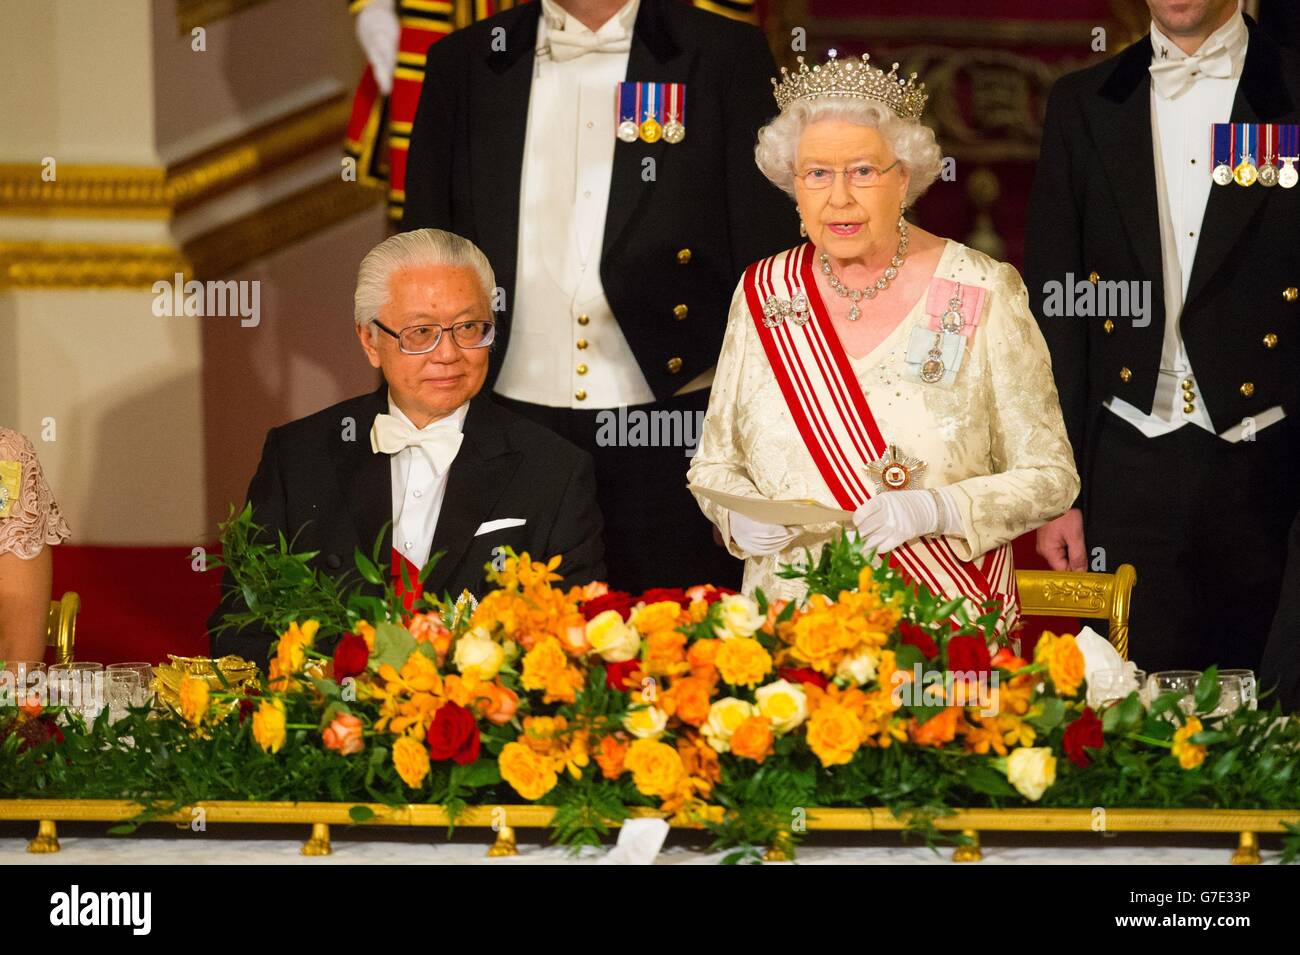 La reine Elizabeth II s'adresse aux dignitaires lors d'un banquet d'État au Palais de Buckingham dans le centre de Londres, le premier jour de la visite d'État du président de Singapour en Grande-Bretagne. Banque D'Images